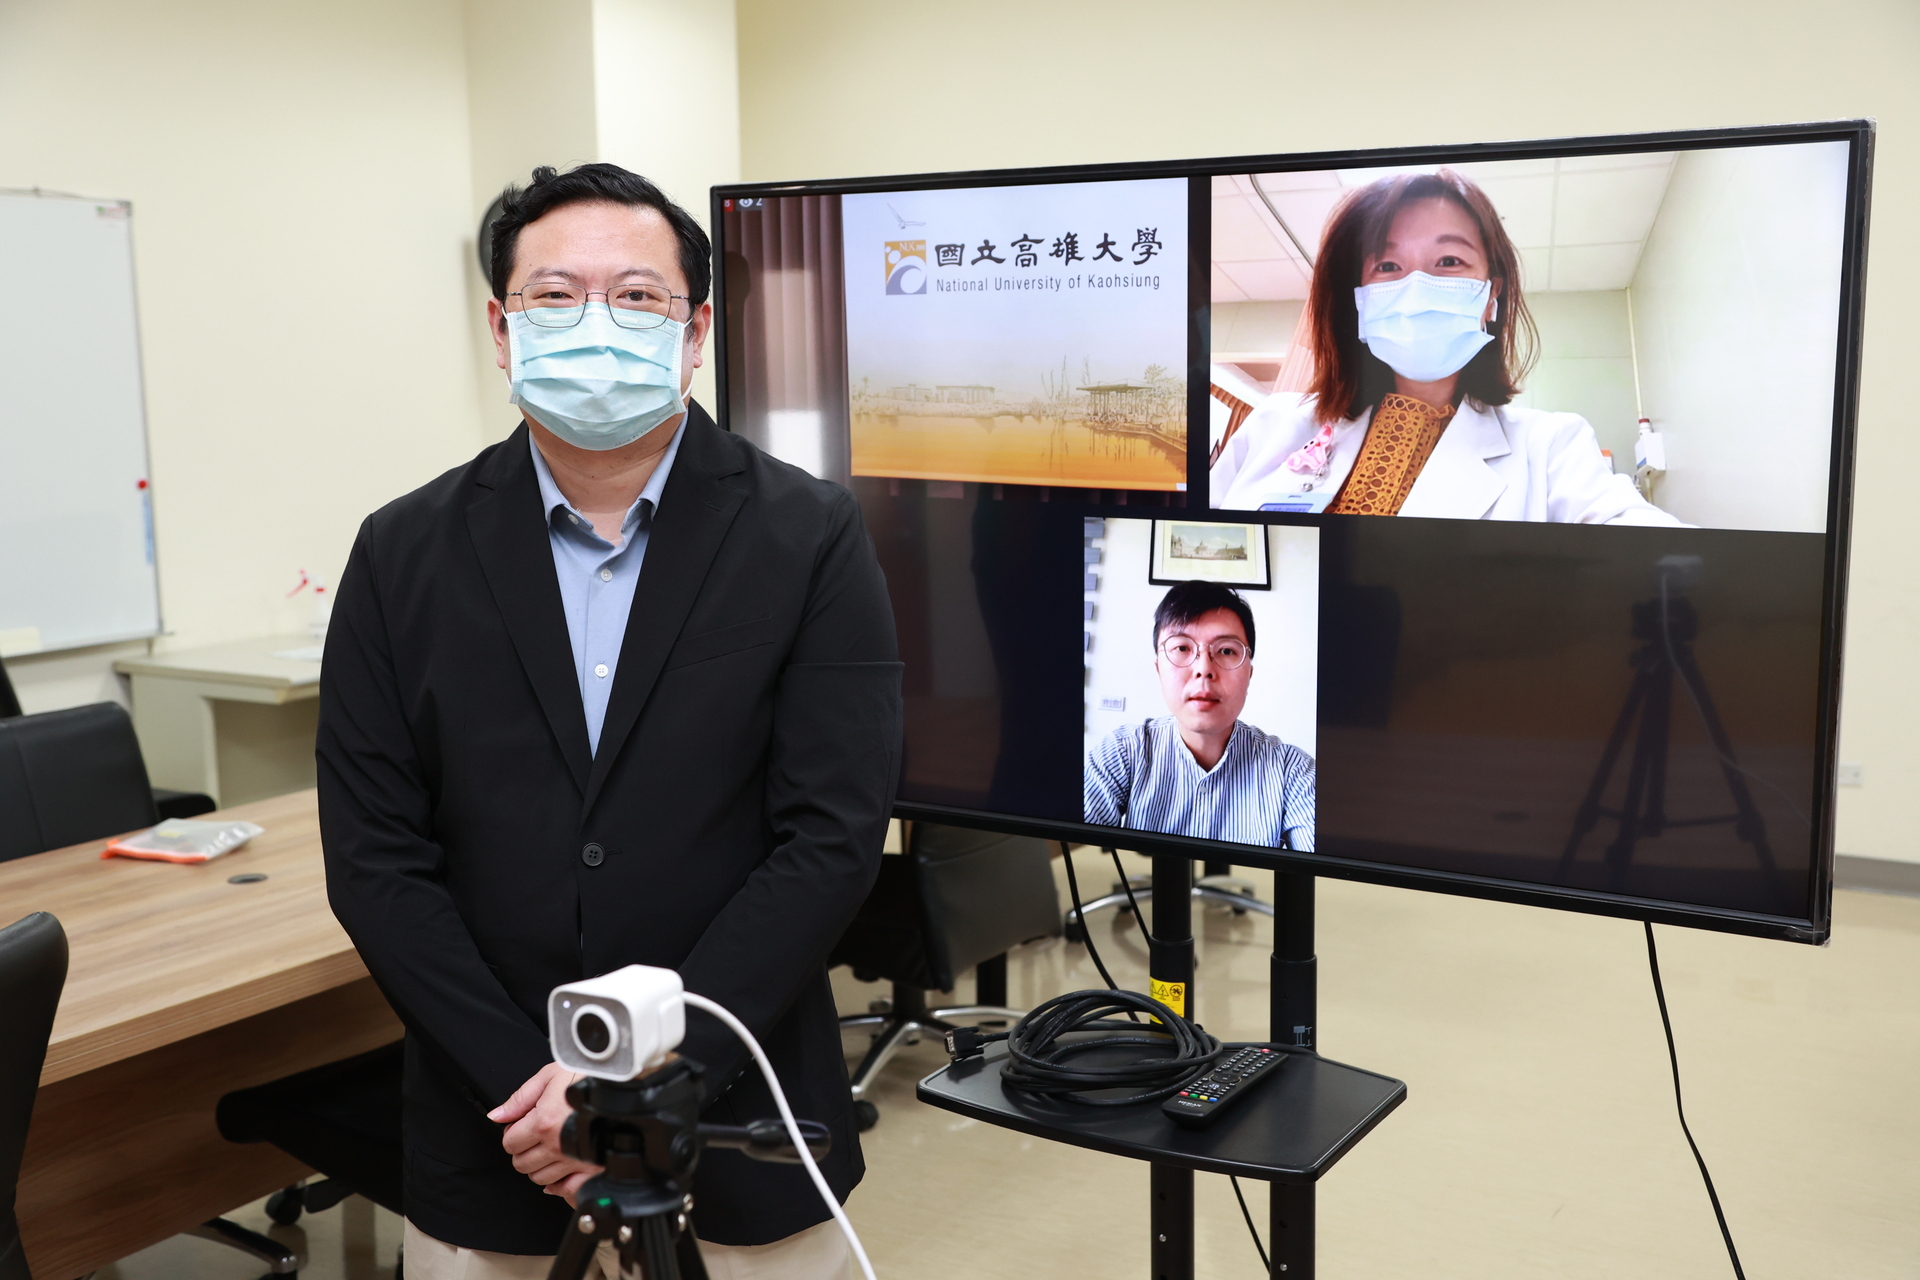 「亞洲虛擬學院 (Asia Virtual Academy)」發起人、國際長吳行浩邀請無任所大使、醫師林靜儀（電視螢幕右上）擔任閉幕講座講者。